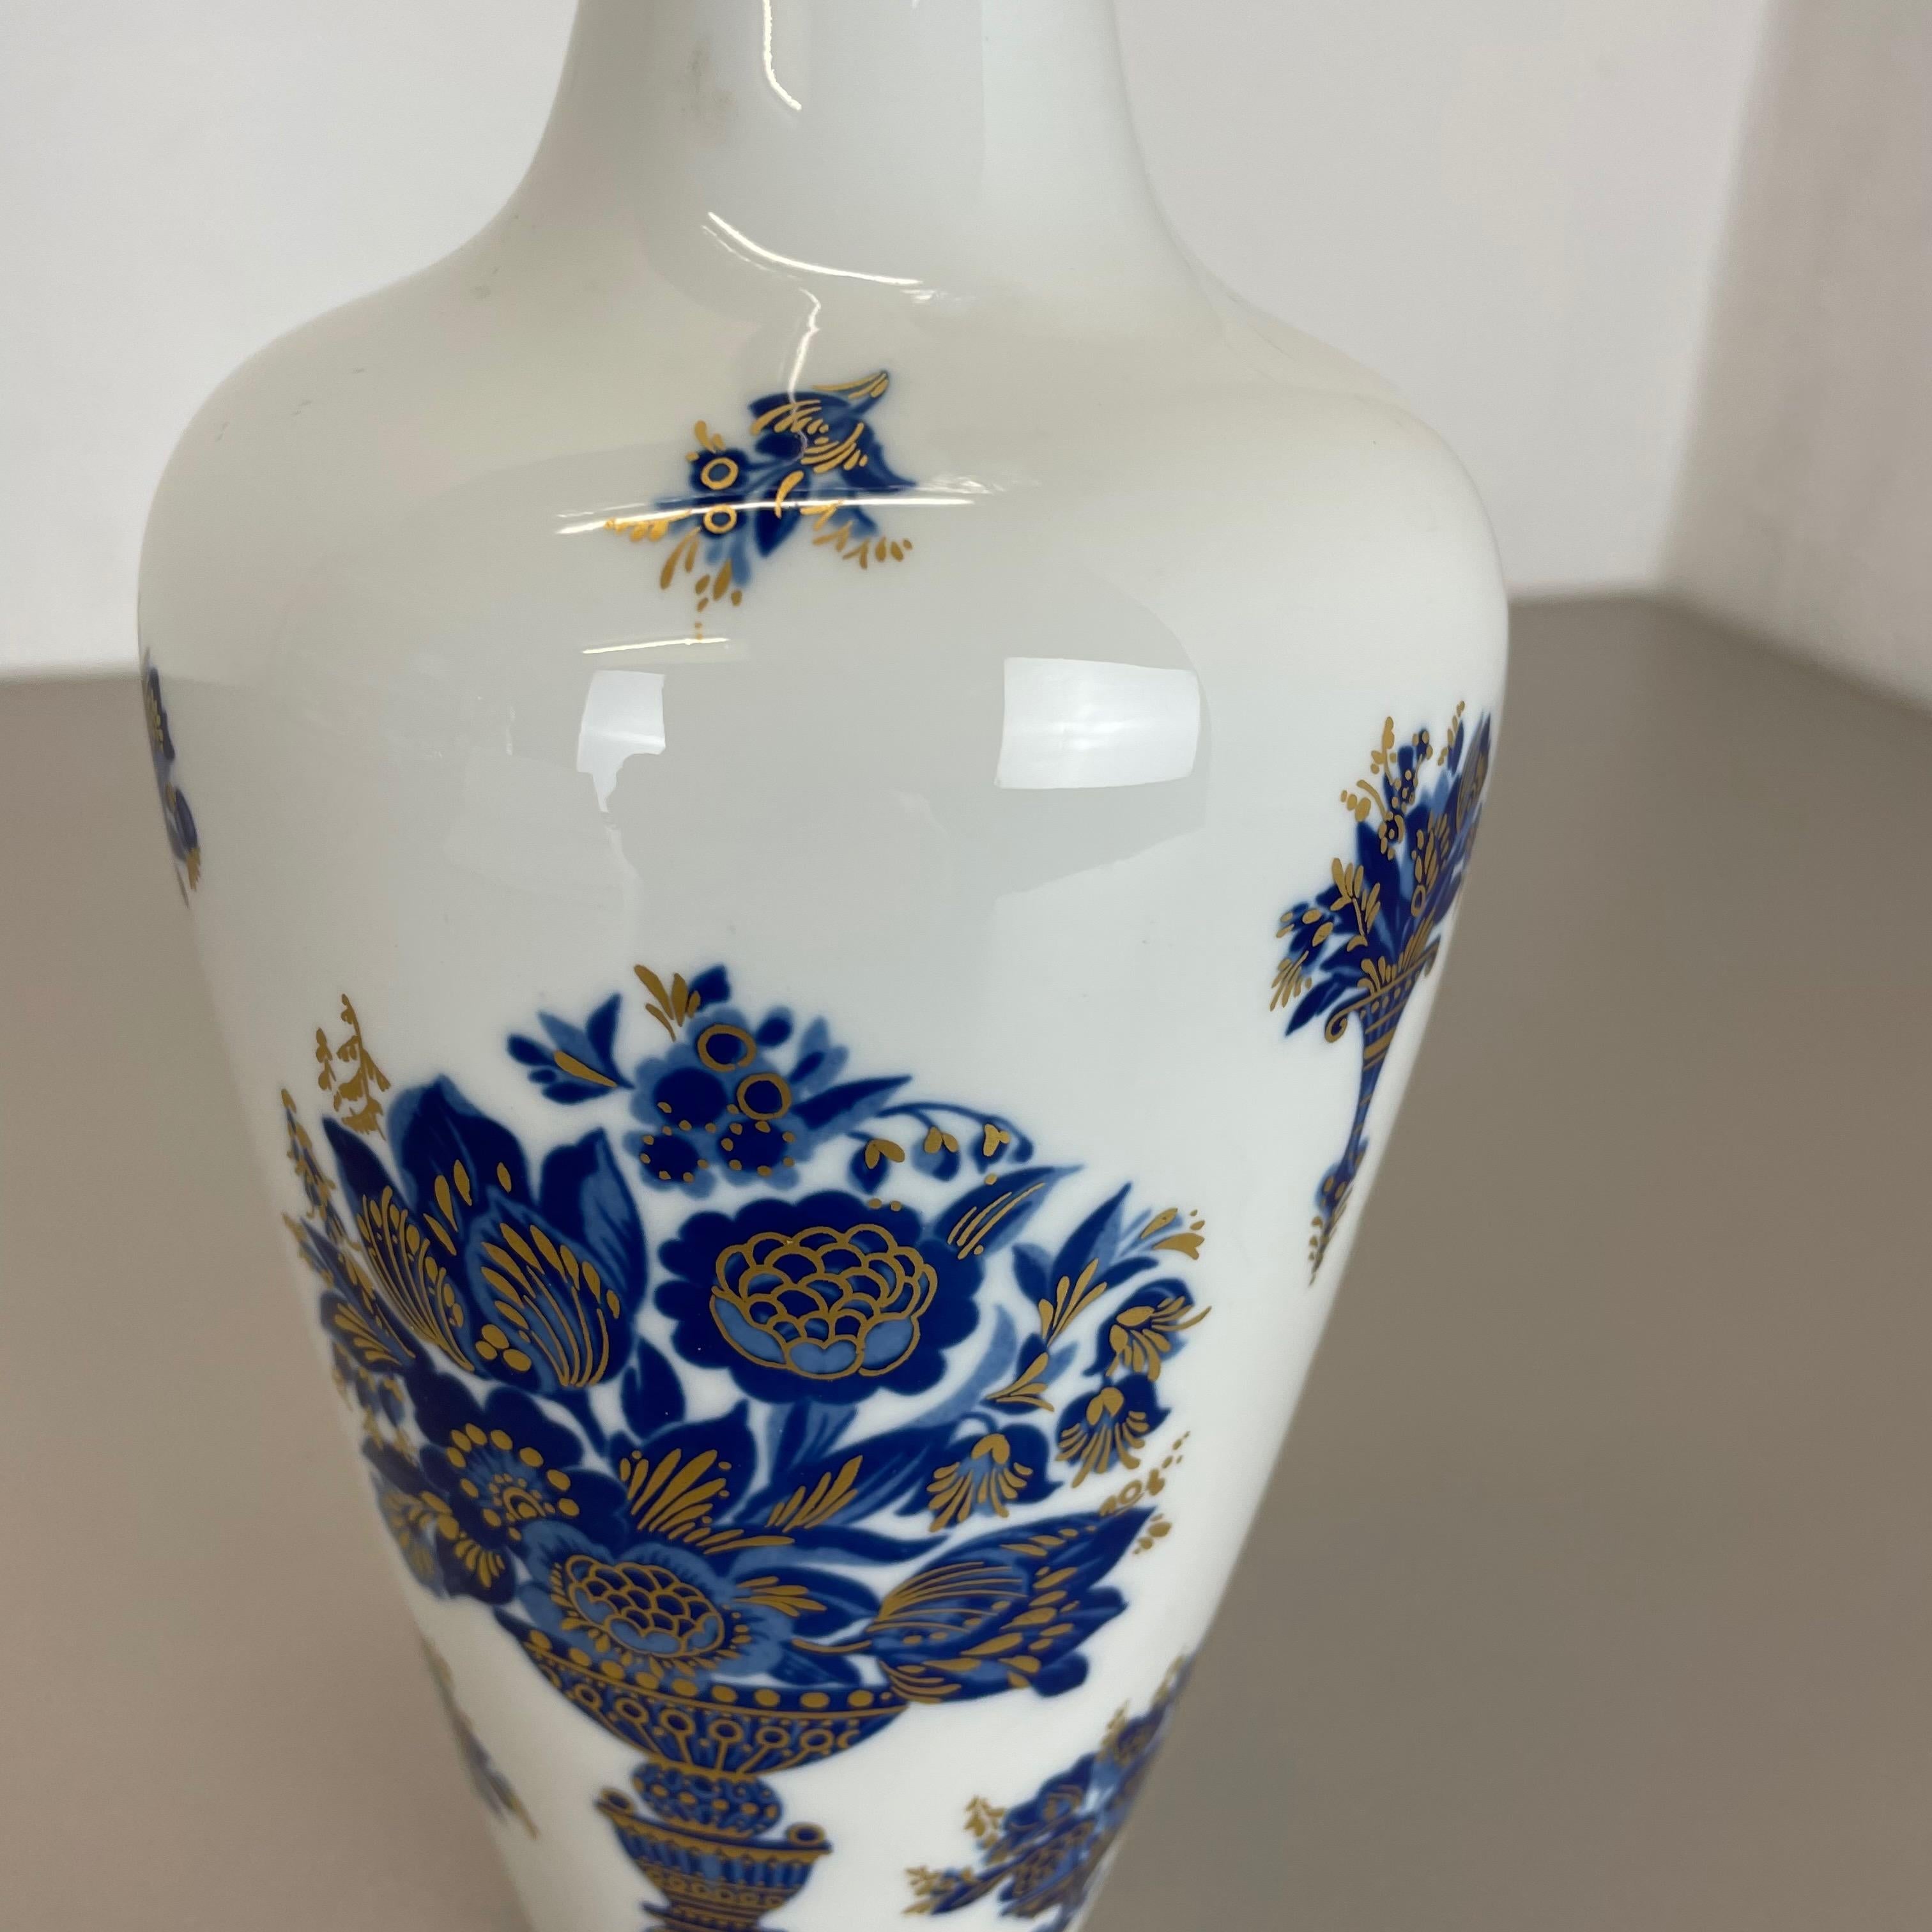 Original 1970s Op Art Vase Porcelain German Vase by Heinrich Ceramics, Germany In Good Condition For Sale In Kirchlengern, DE